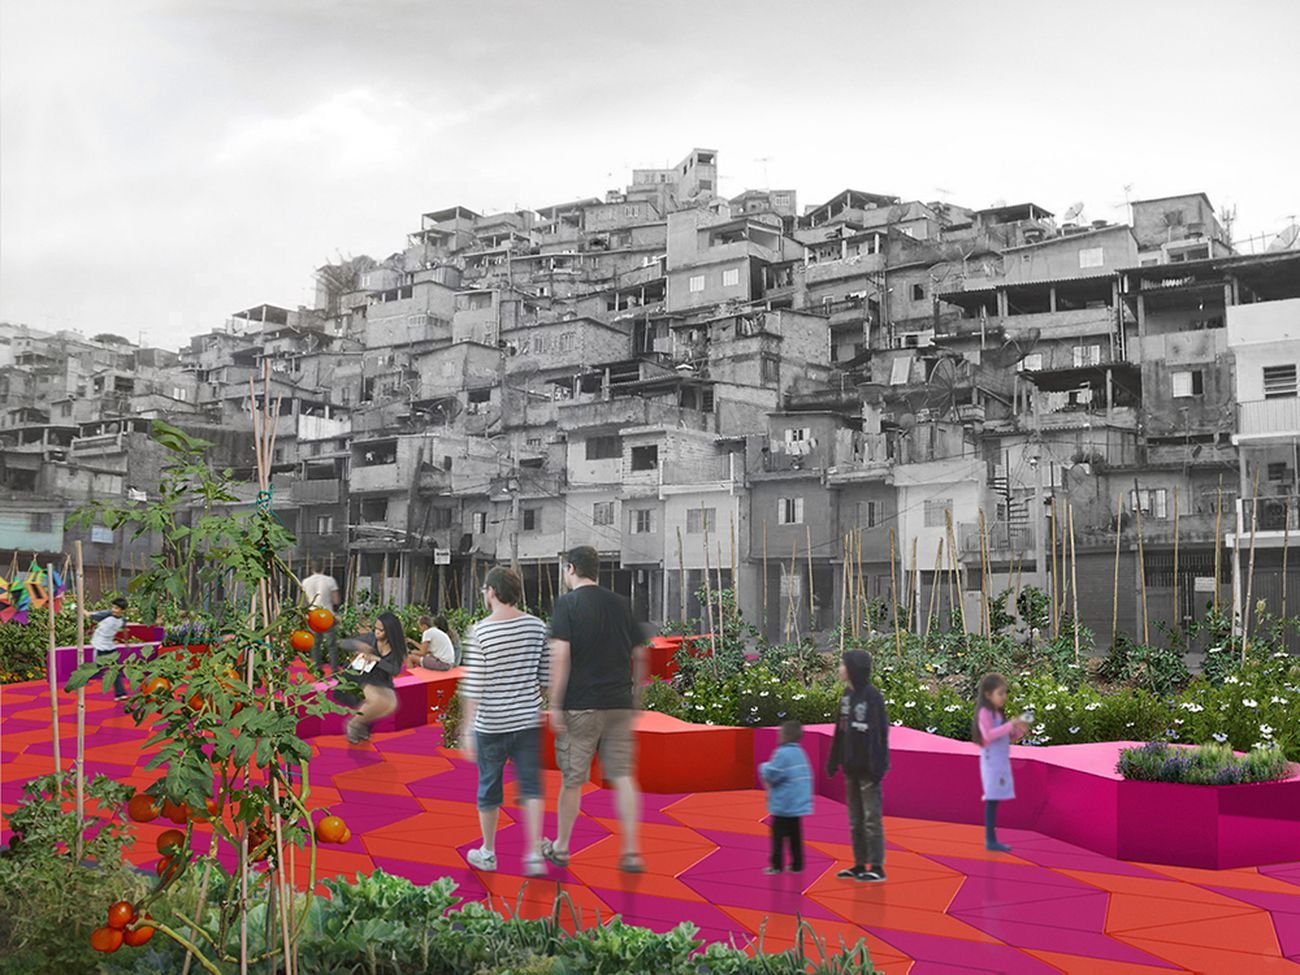 Piuarch, Espaço, un progetto di rigenerazione urbano per São Paulo. Courtesy Piuarch